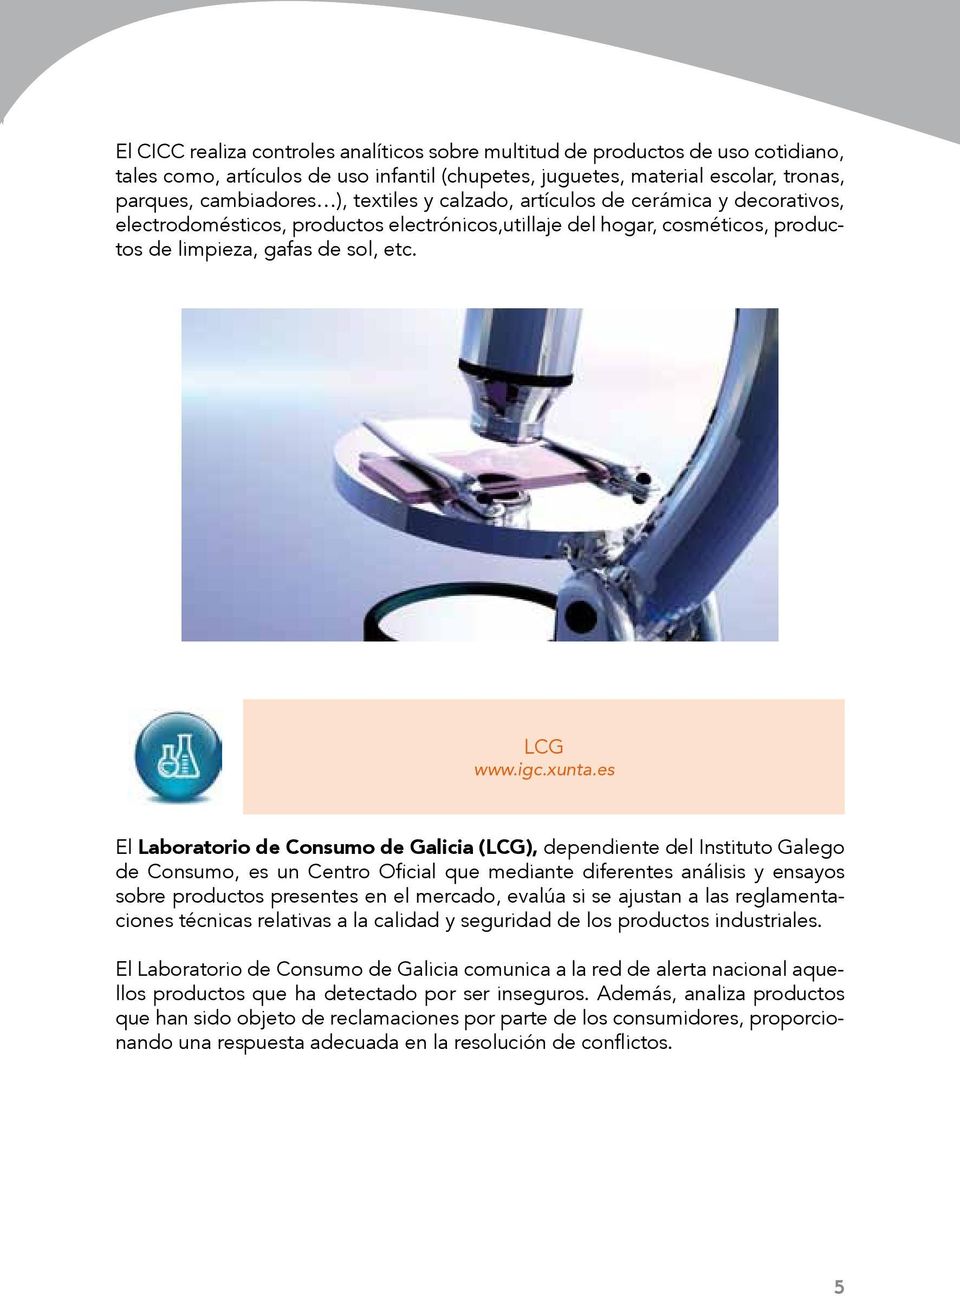 es El Laboratorio de Consumo de Galicia (LCG), dependiente del Instituto Galego de Consumo, es un Centro Oficial que mediante diferentes análisis y ensayos sobre productos presentes en el mercado,